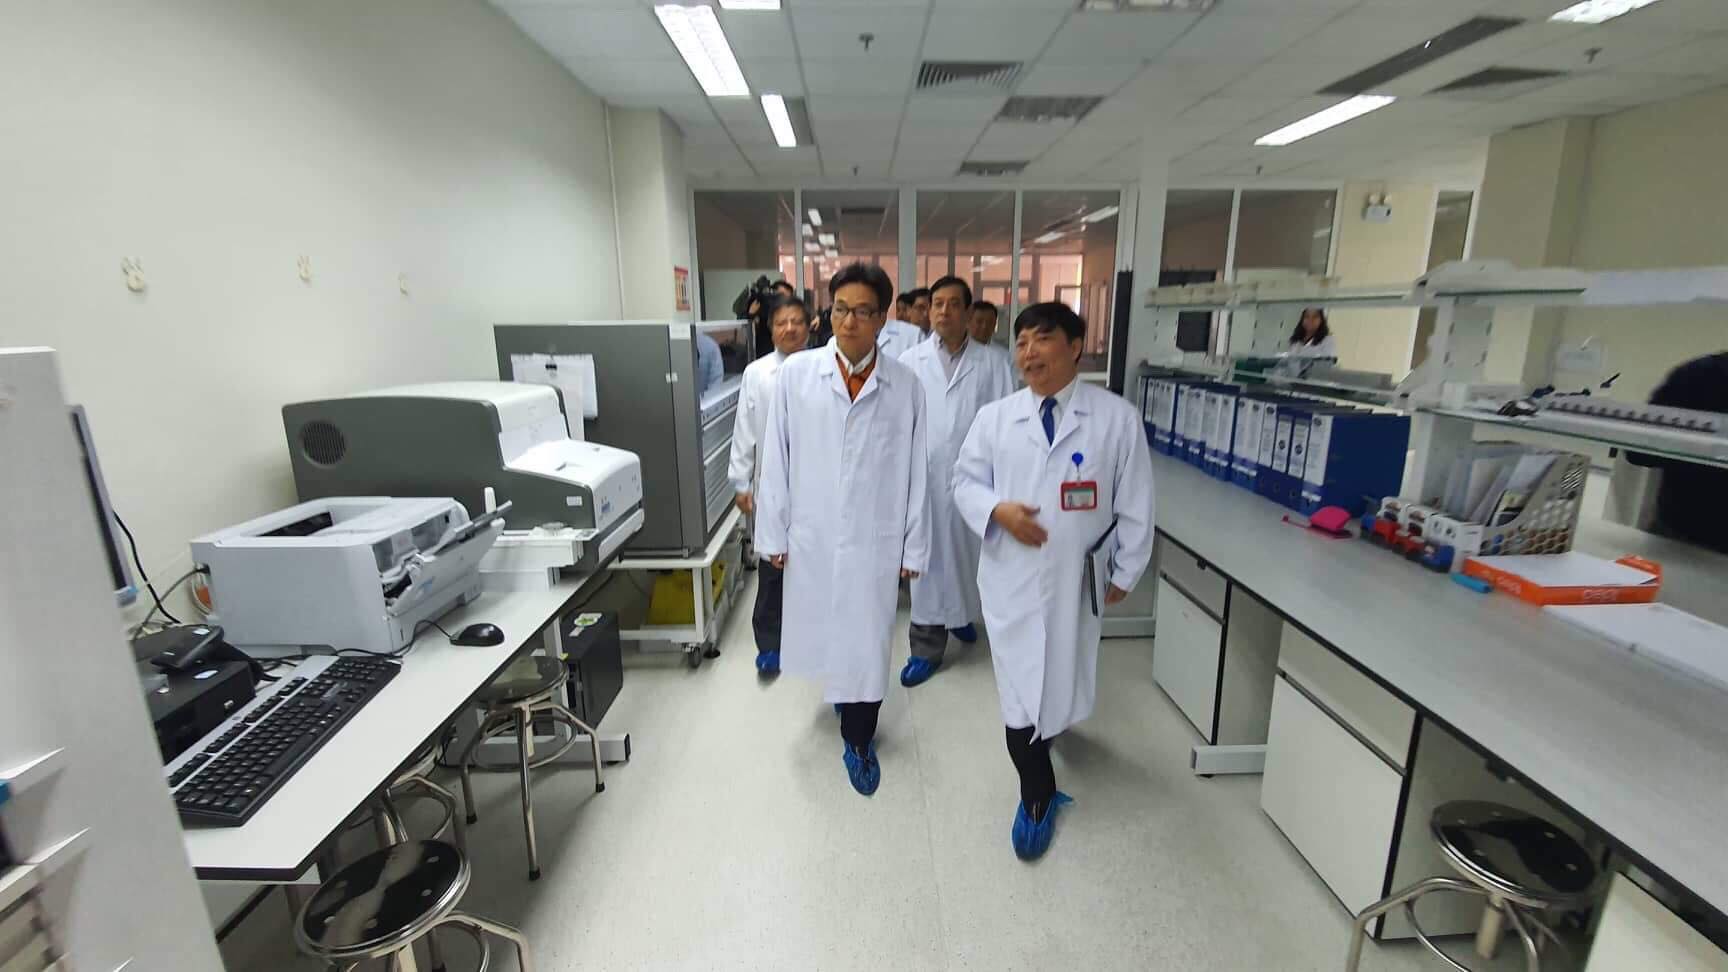 Phó Thủ tướng Vũ Đức Đam cùng Ban chỉ đạo phòng chống dịch của Bộ Y tế đã kiểm tra phòng chống virus Corona tại BV Nhiệt đới TƯ ngày 23/1.